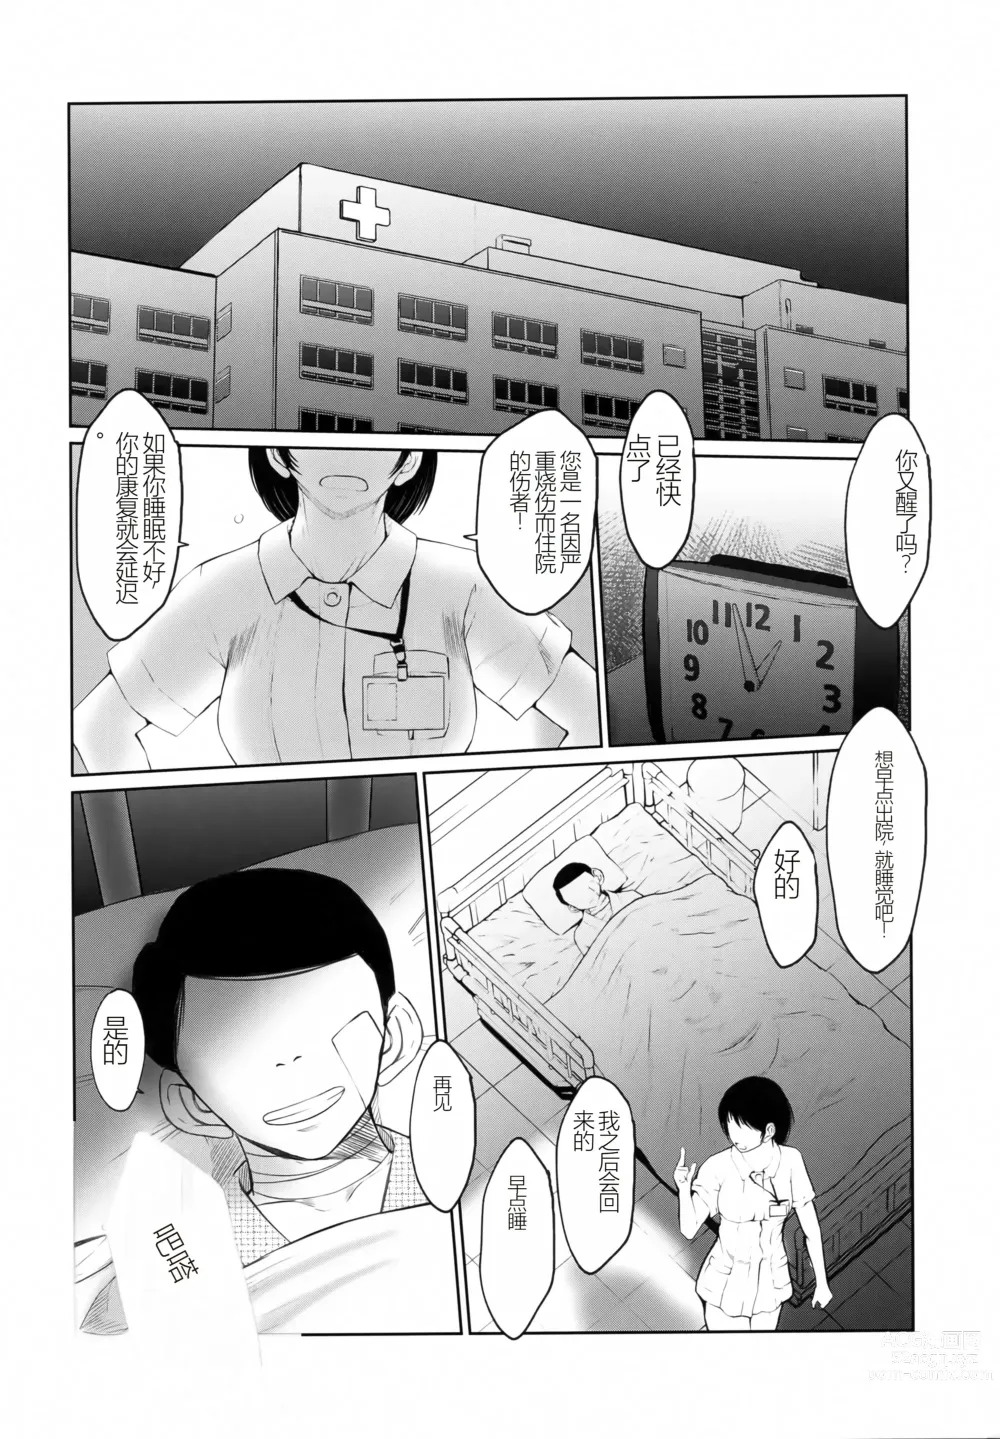 Page 3 of doujinshi Menyouna Yatsura